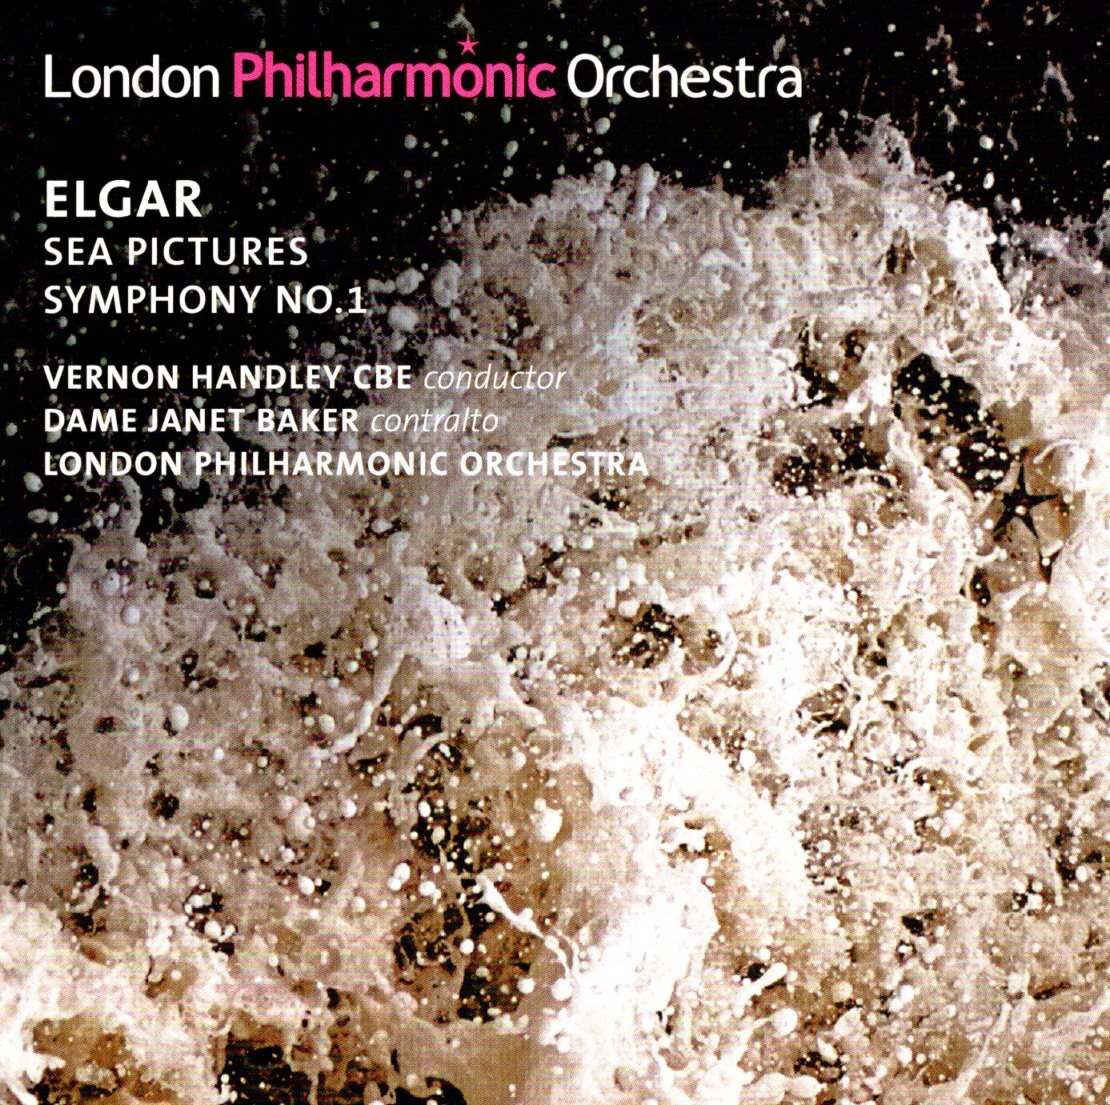 ハンドリー指揮エルガー交響曲第1番他 LPO自主制作盤の画像1